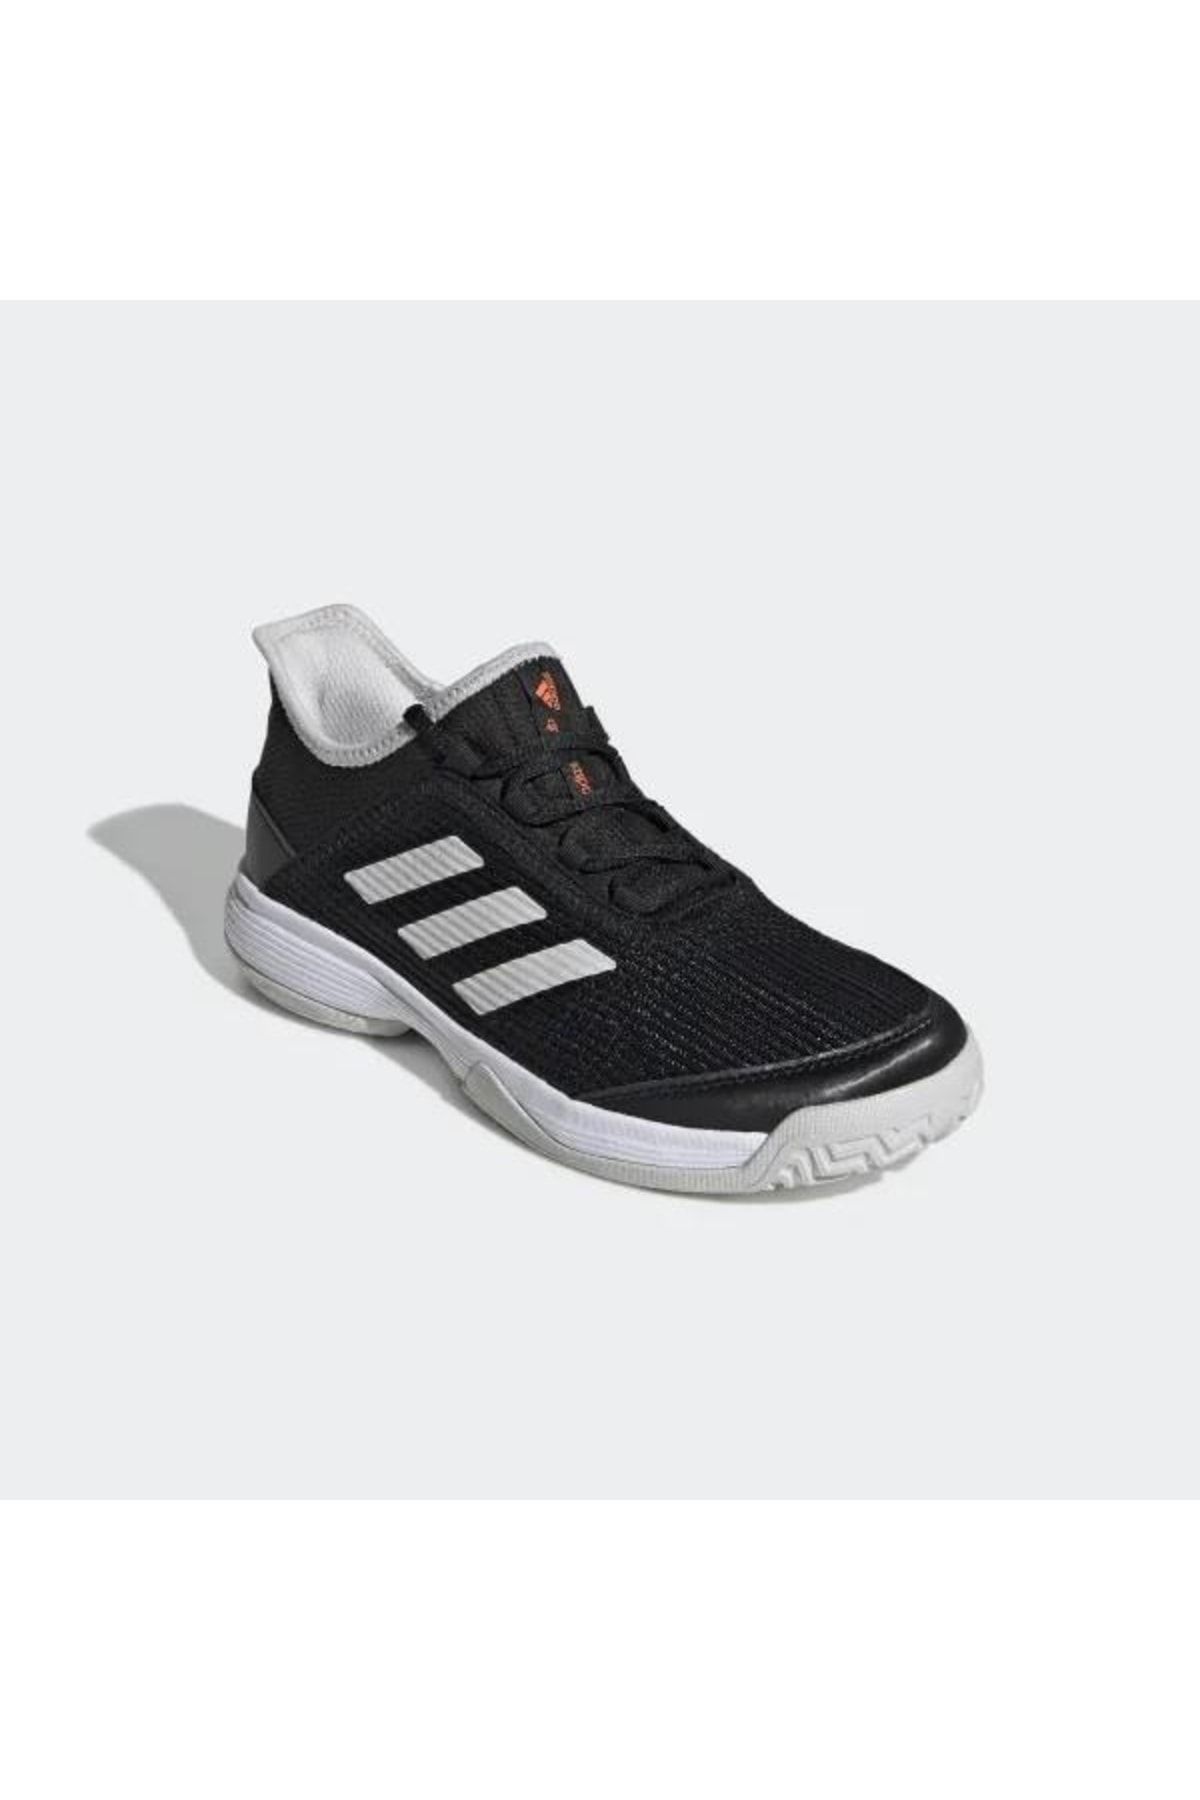 adidas Ef0601 Adizero Club Çocuk Siyah Tenis Ayakkabısı